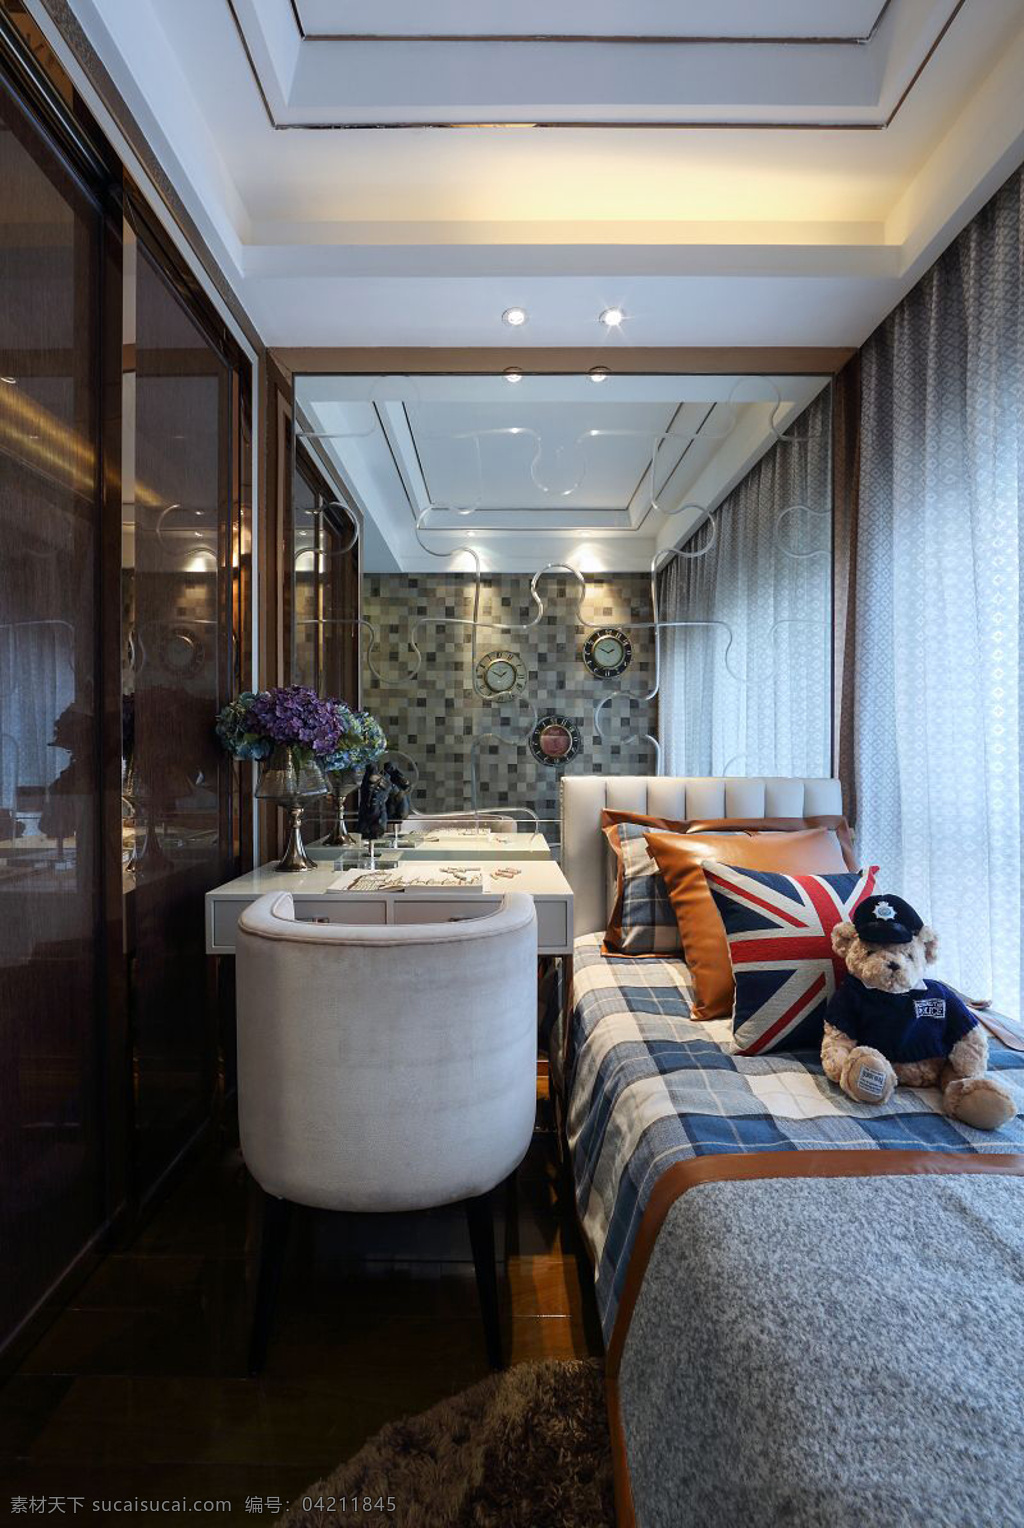 简约 装修 客厅 效果图 高清 家居 沙发 小型客厅 奢华 卧室 欧式风格 现代 温馨 软装